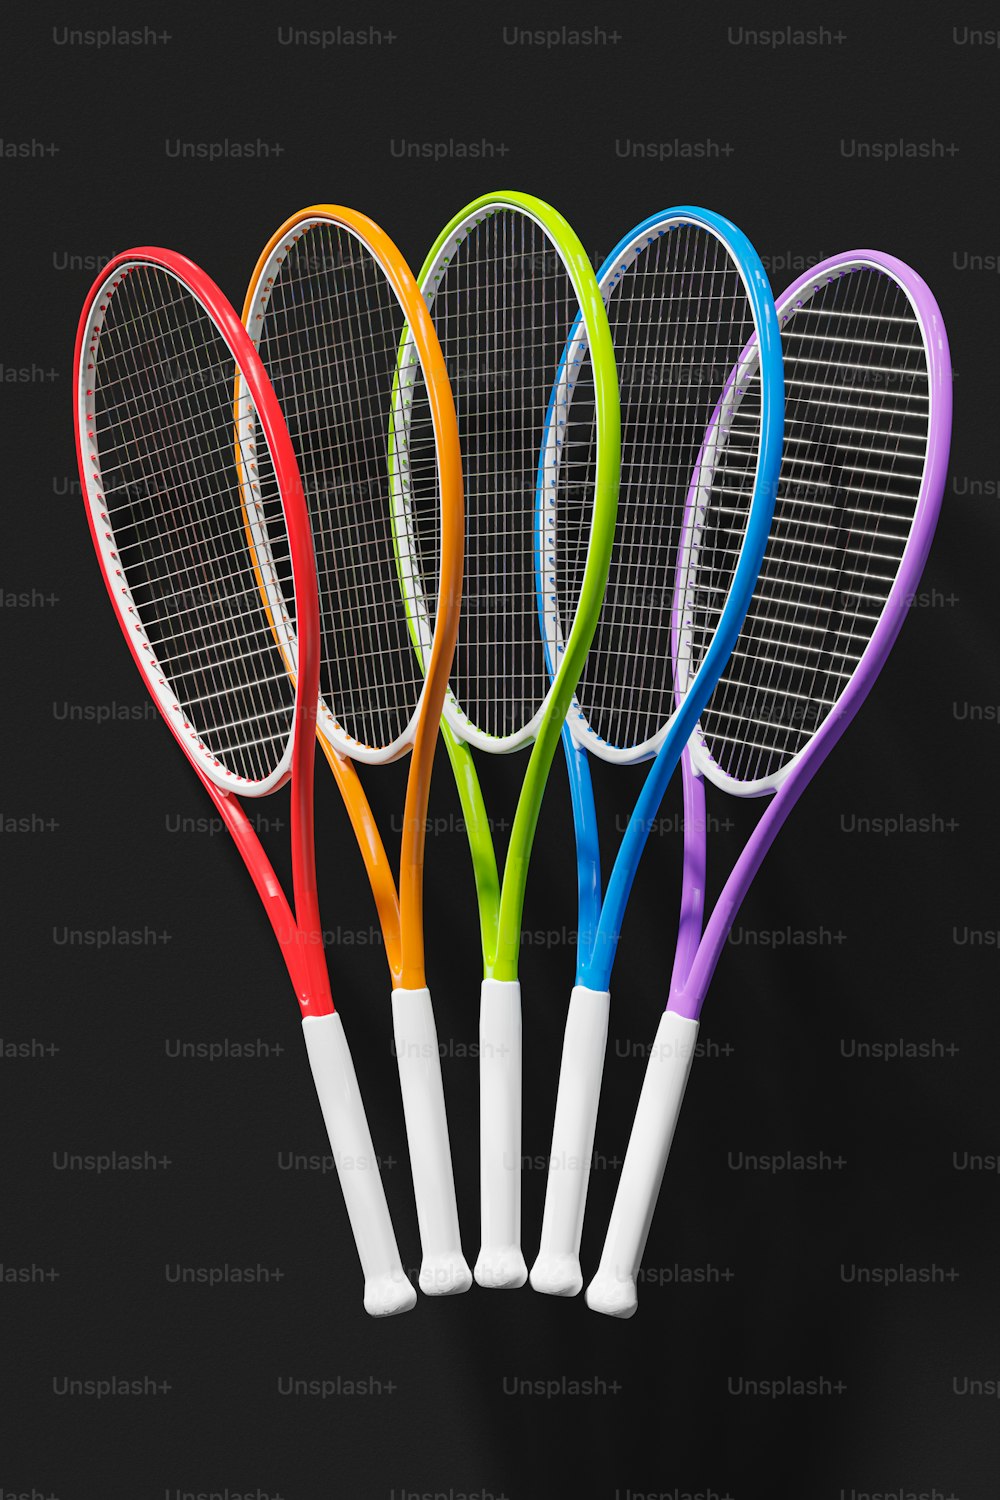 Un gruppo di quattro racchette da tennis sedute una accanto all'altra